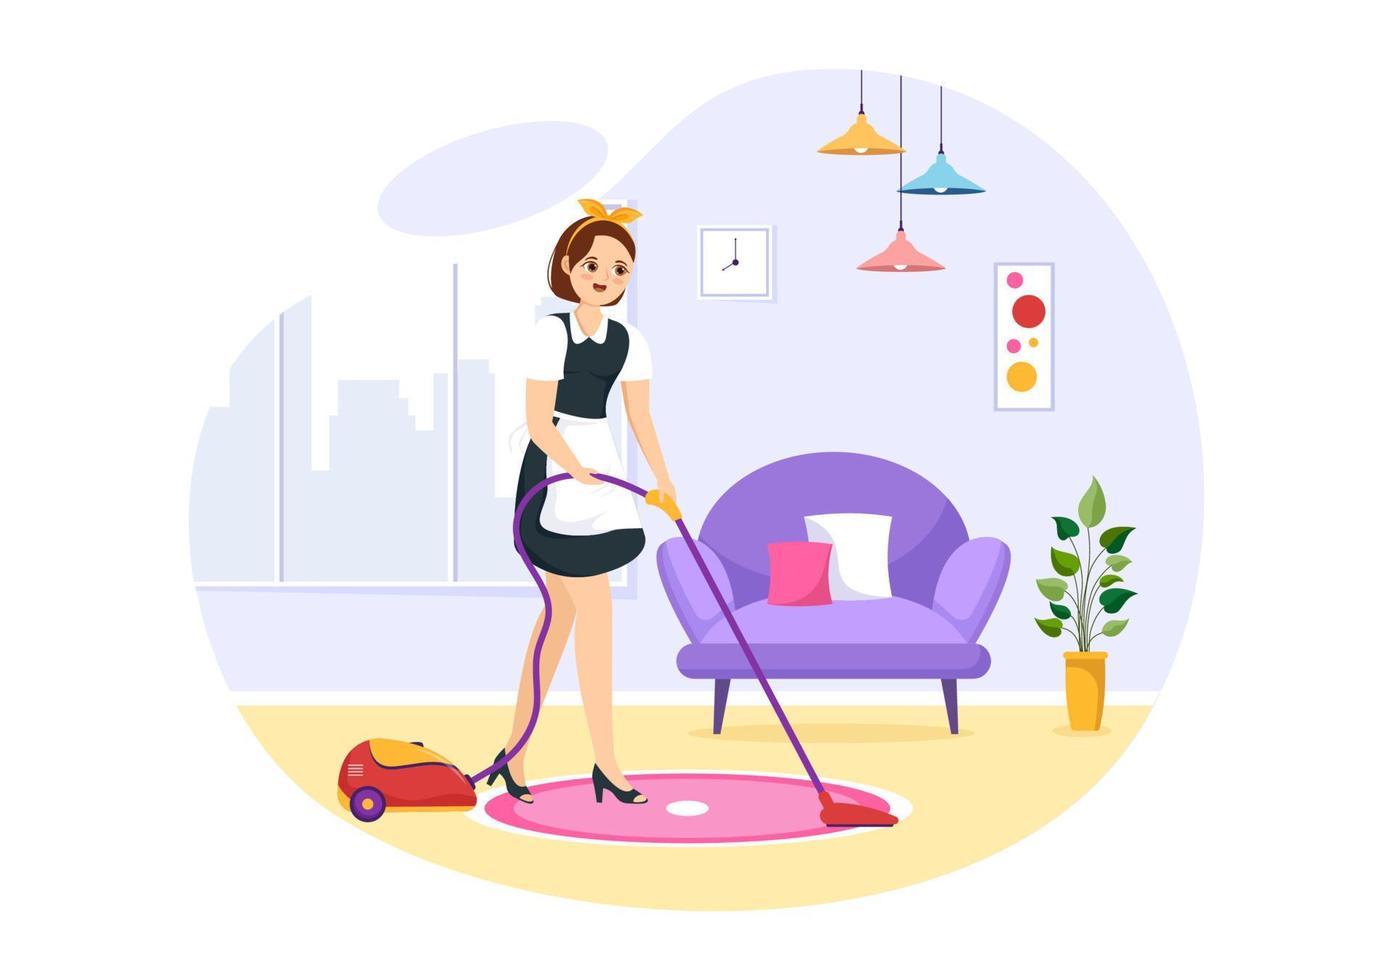 professionnel fille Femme de ménage illustration de nettoyage un service portant sa uniforme avec tablier pour nettoyer une maison dans plat dessin animé main tiré modèles vecteur